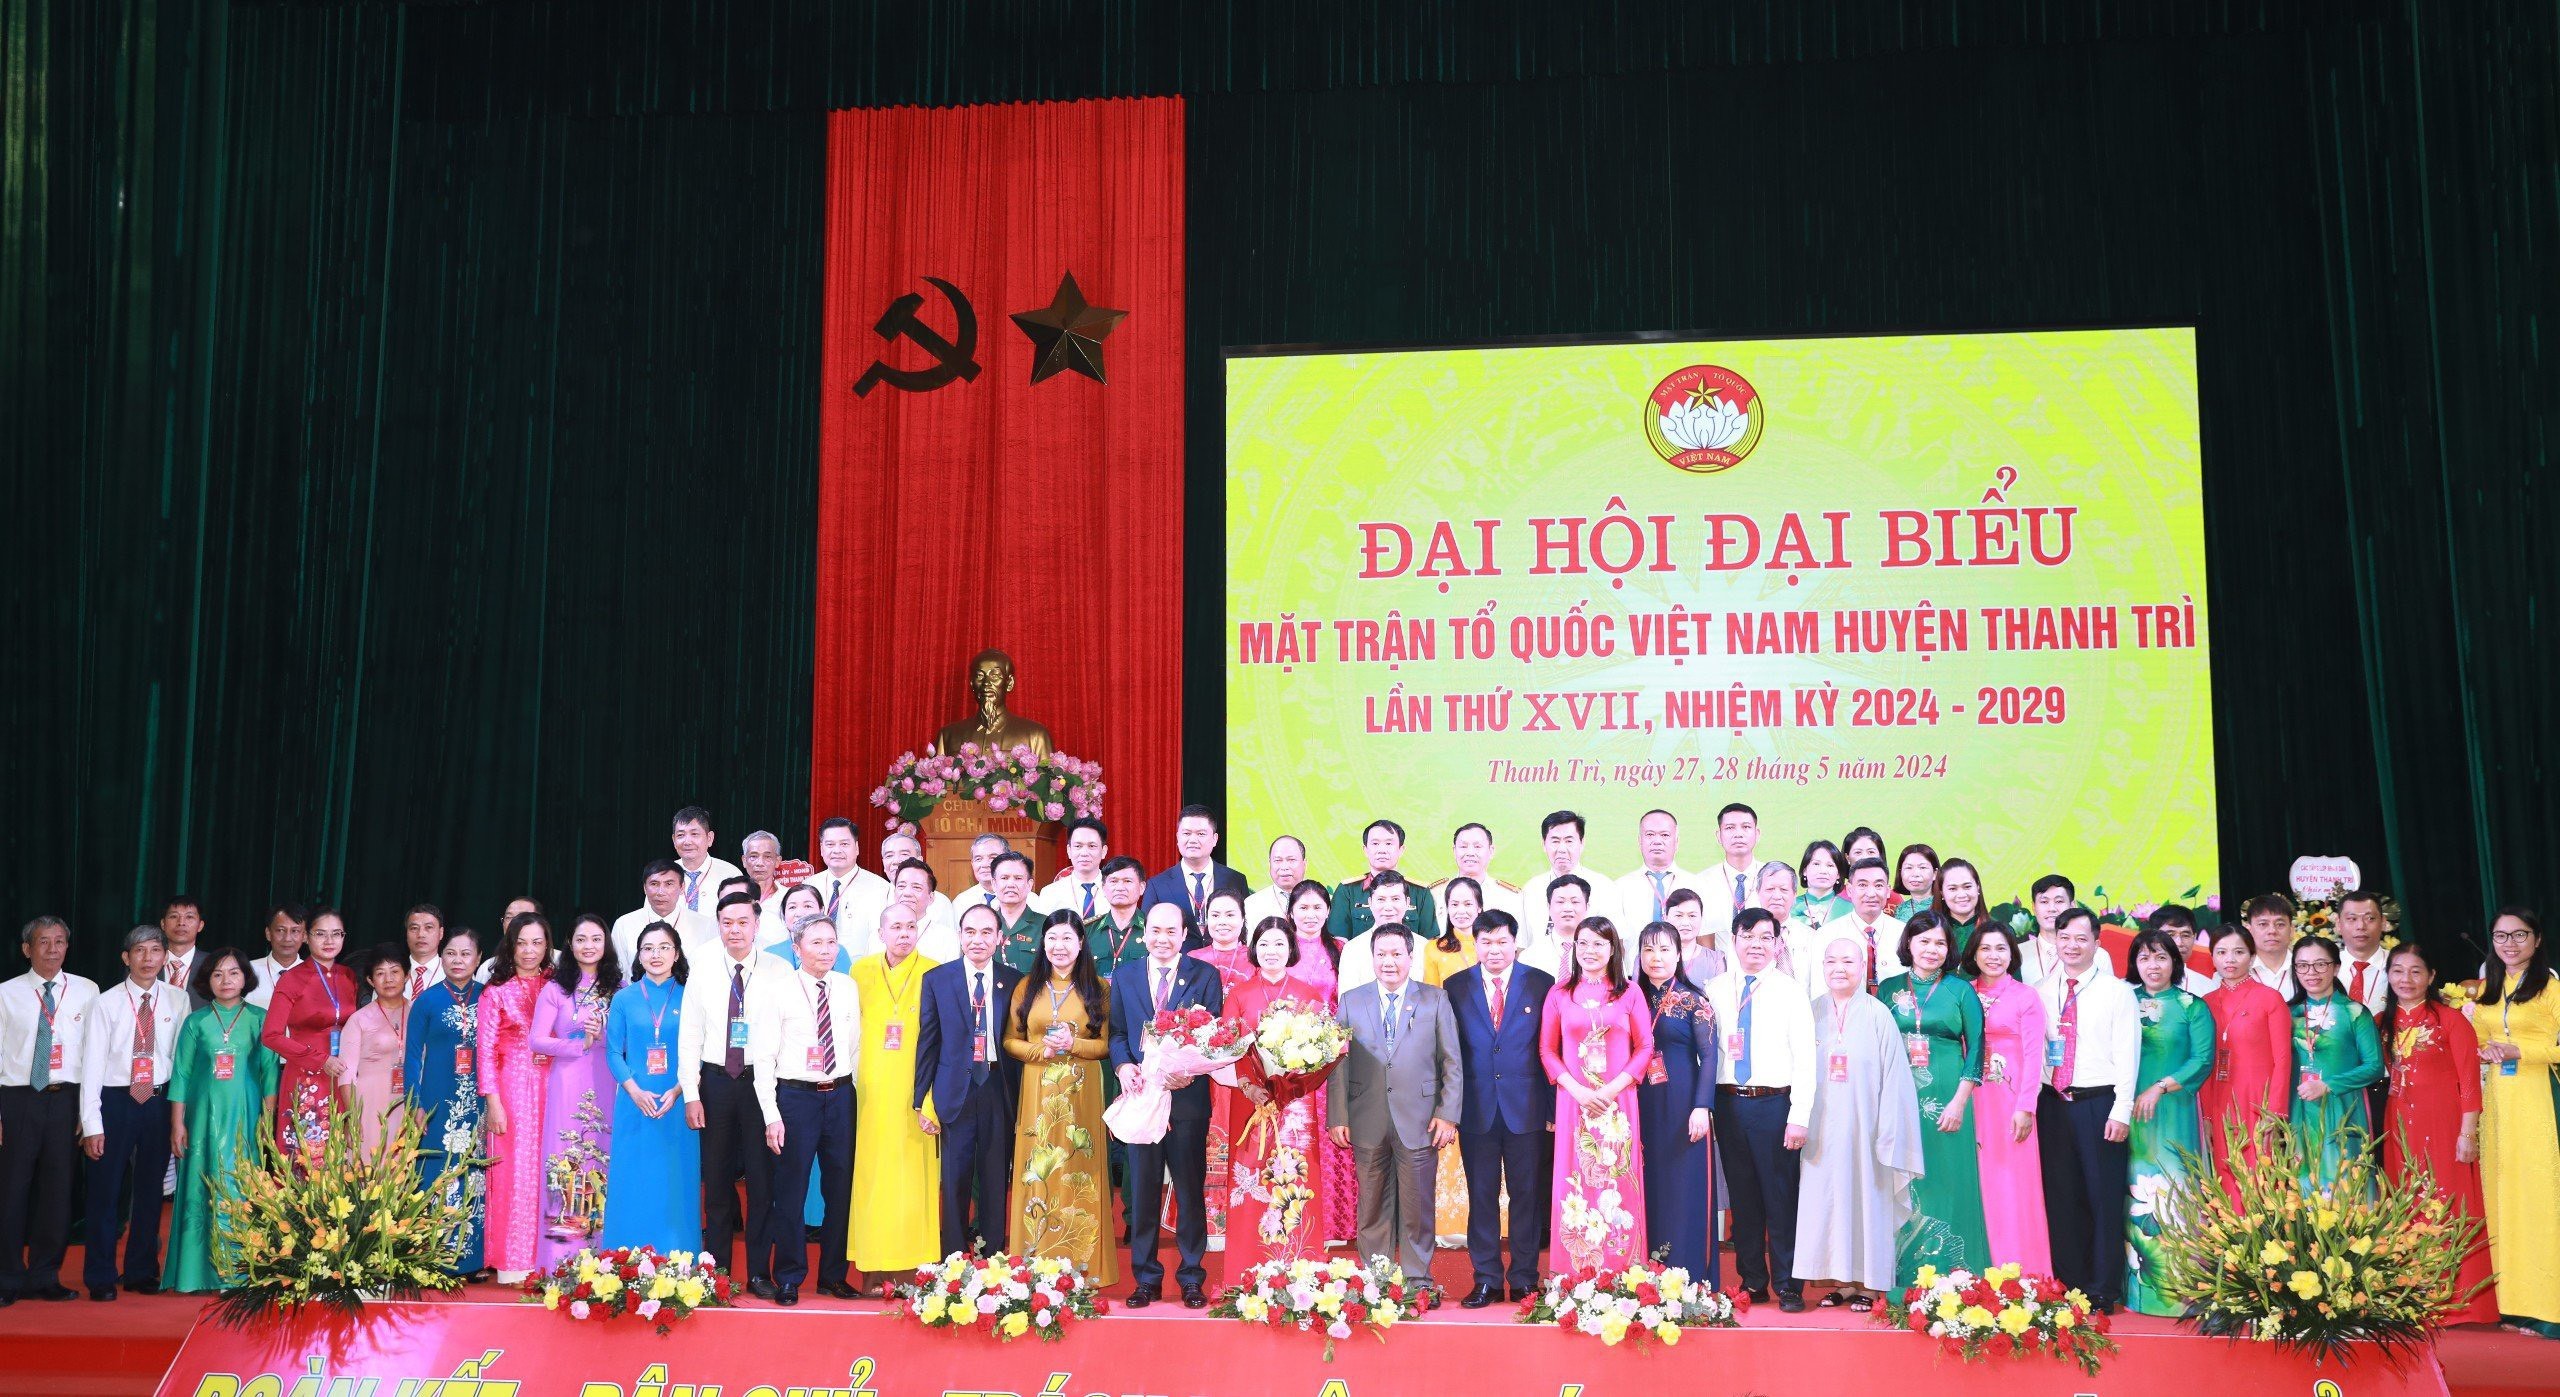 Đại hội Đại biểu Mặt trận Tổ quốc Việt Nam huyện Thanh Trì lần thứ XVII